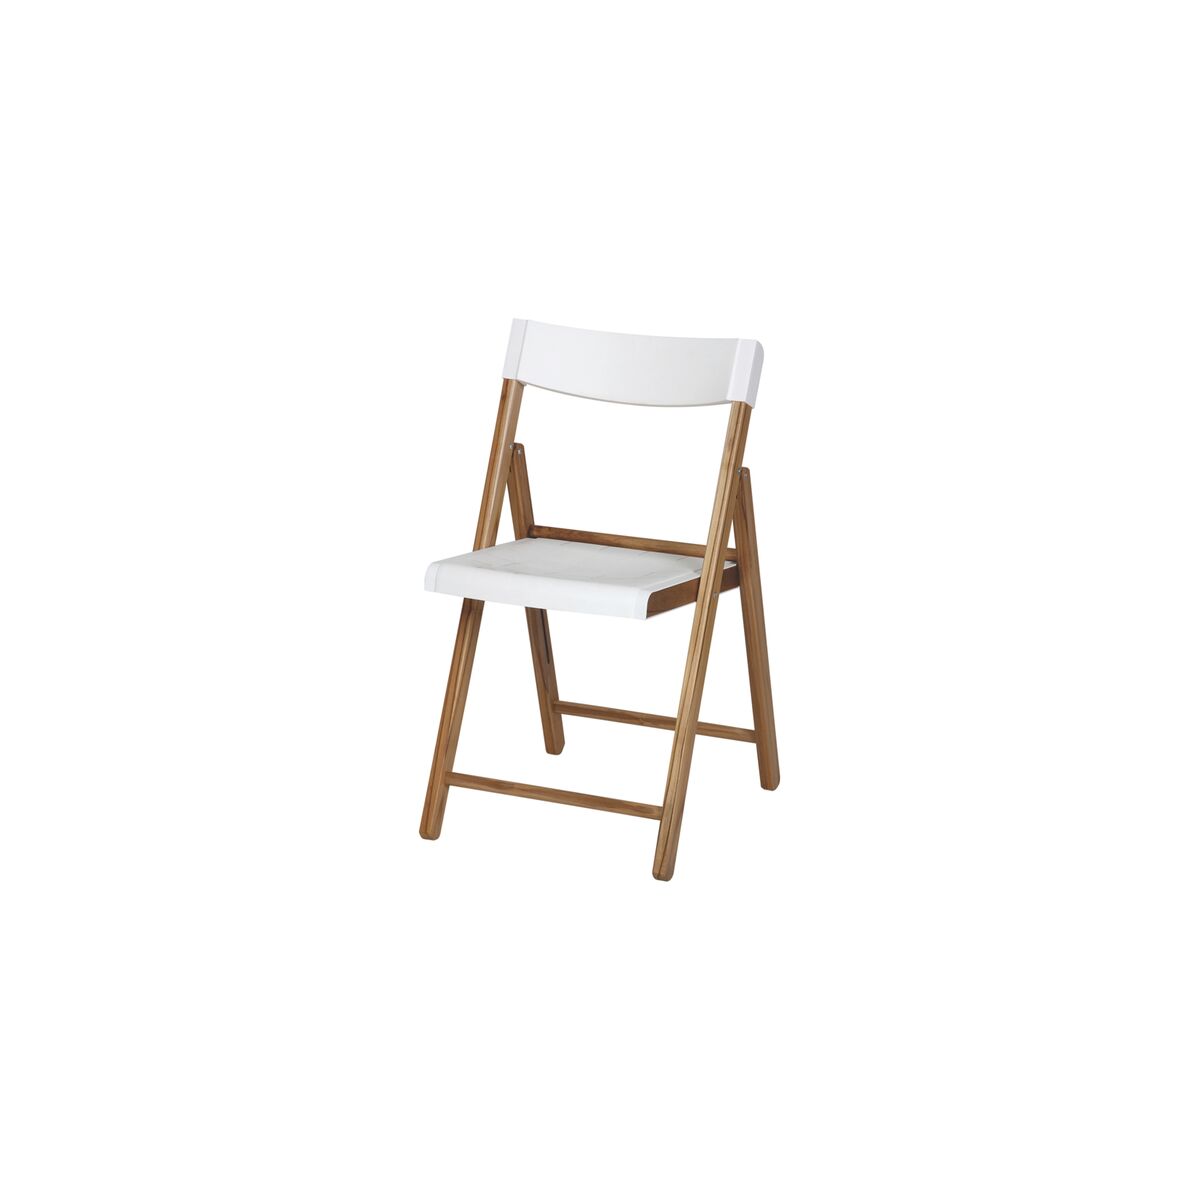 Cadeira de Madeira Dobrável Tramontina Potenza em Madeira Teca com Acabamento Natural com Assento e Encosto em Polipropileno Branco